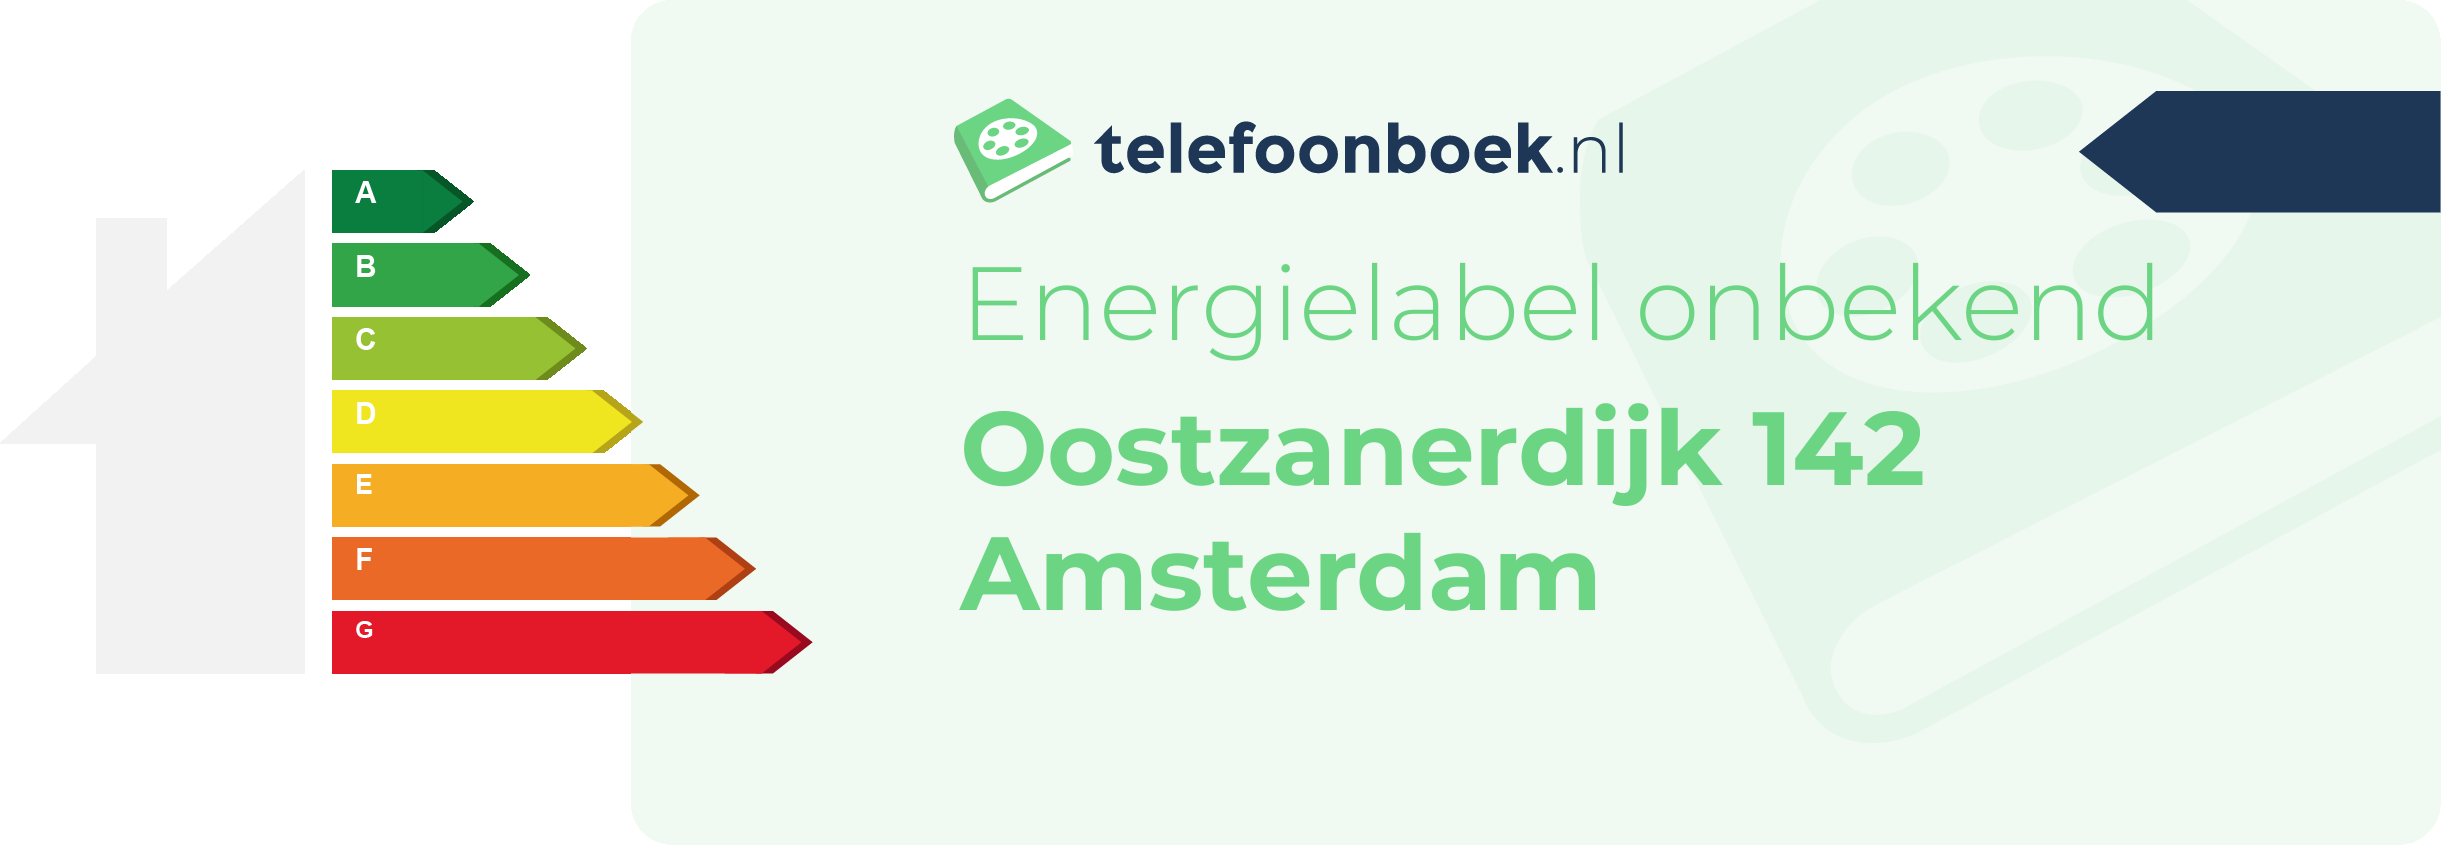 Energielabel Oostzanerdijk 142 Amsterdam